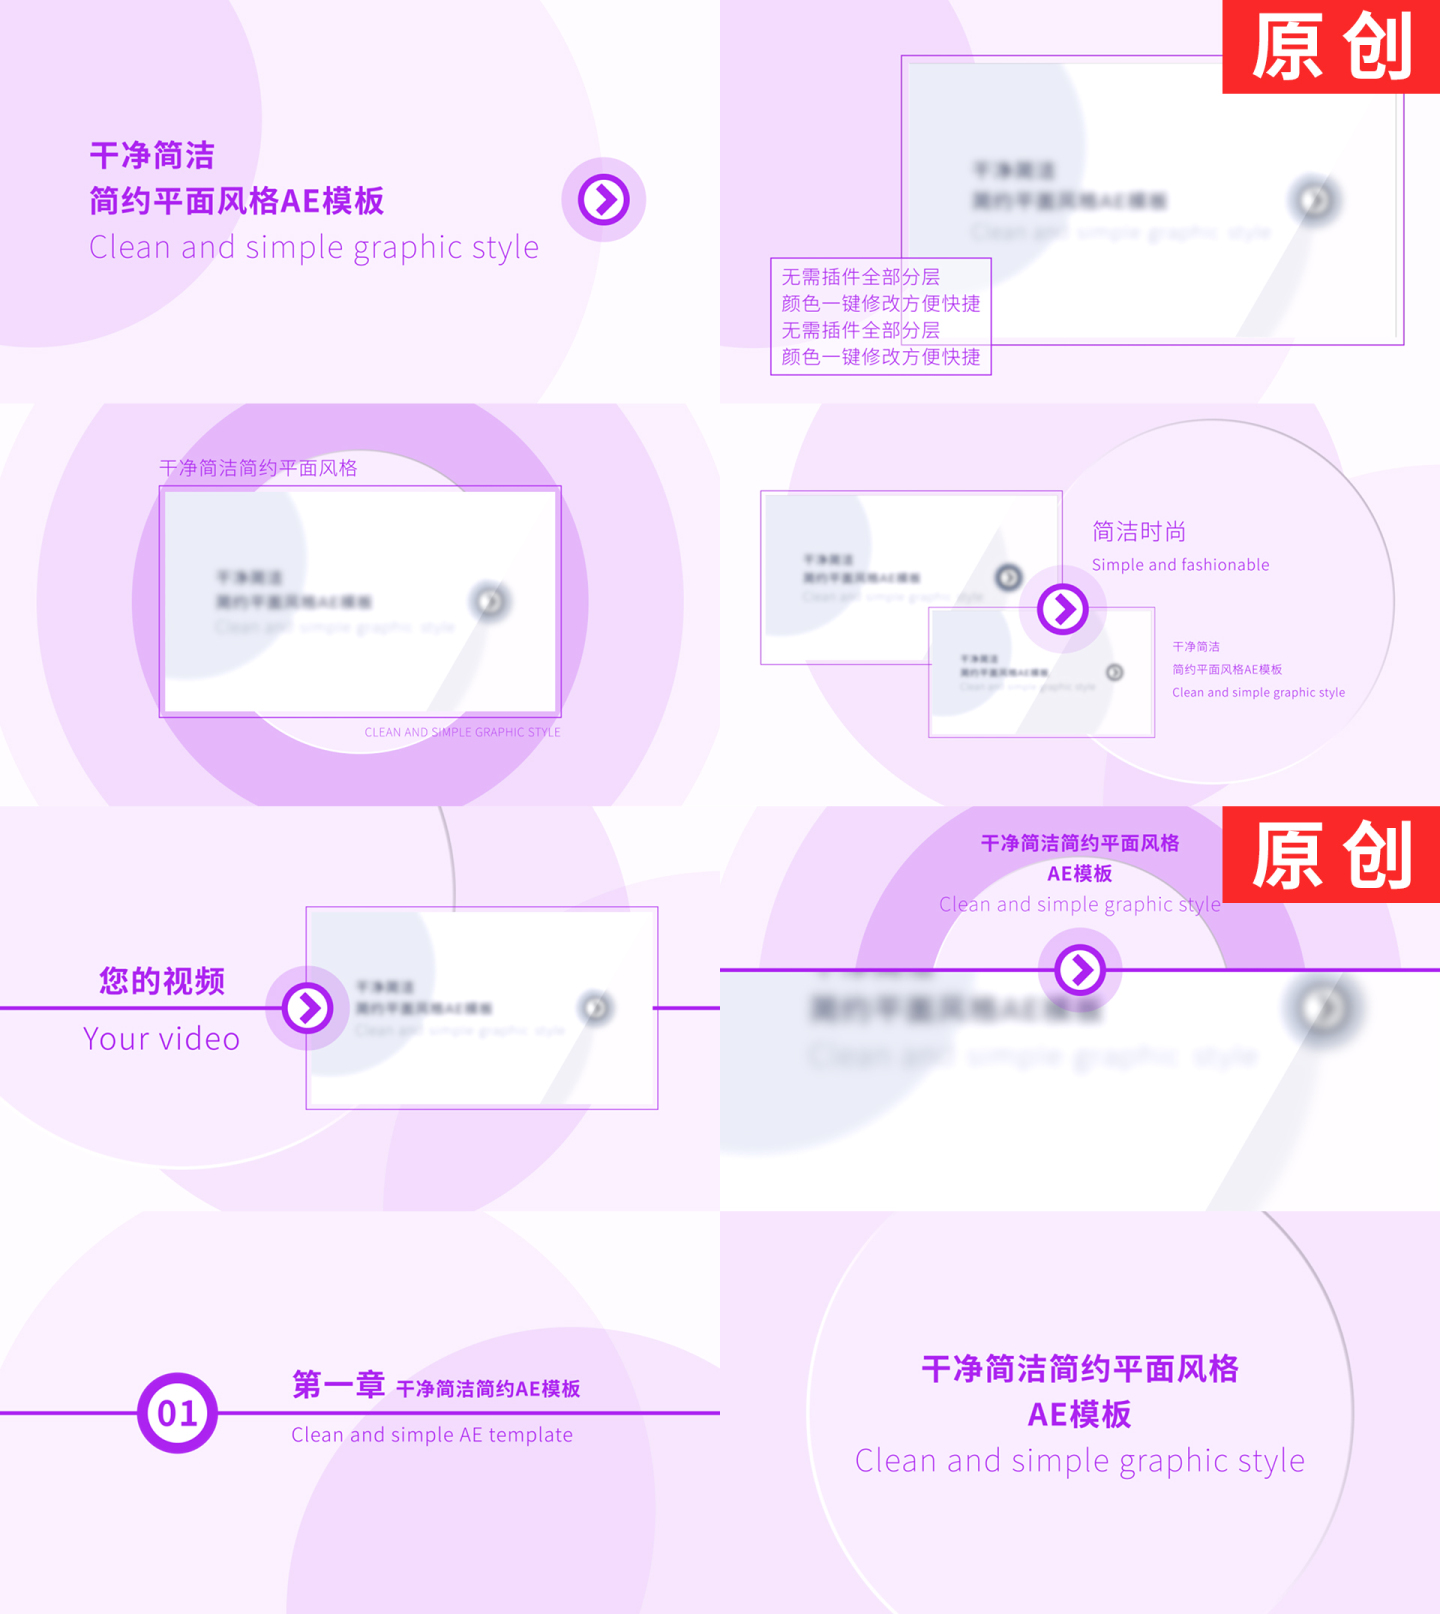 【原创】紫色干净简约企业图文介绍